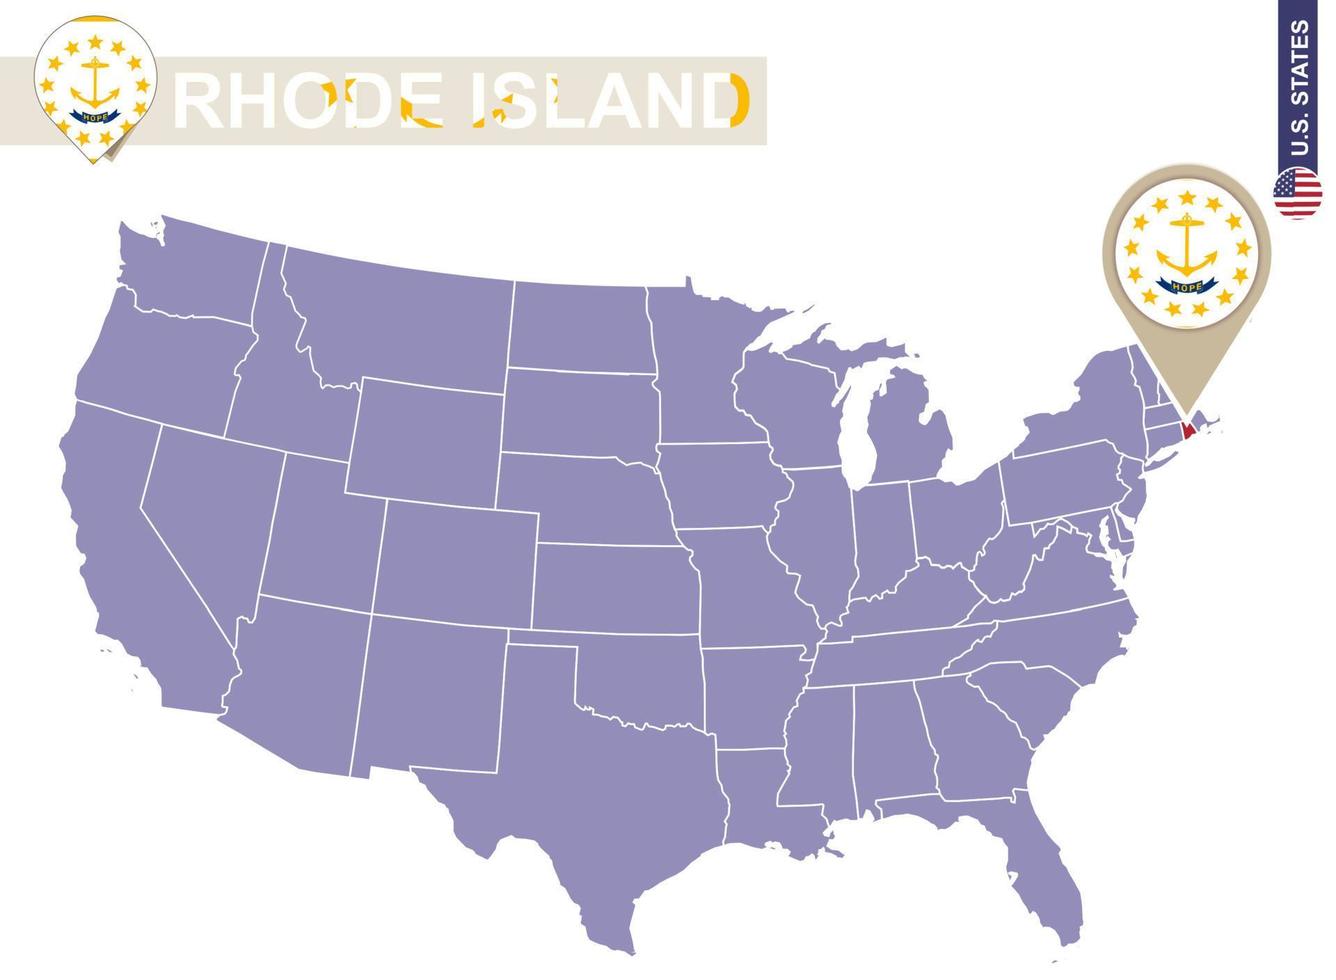 Rhode Island State auf der Karte der USA. rhode island flagge und karte. vektor